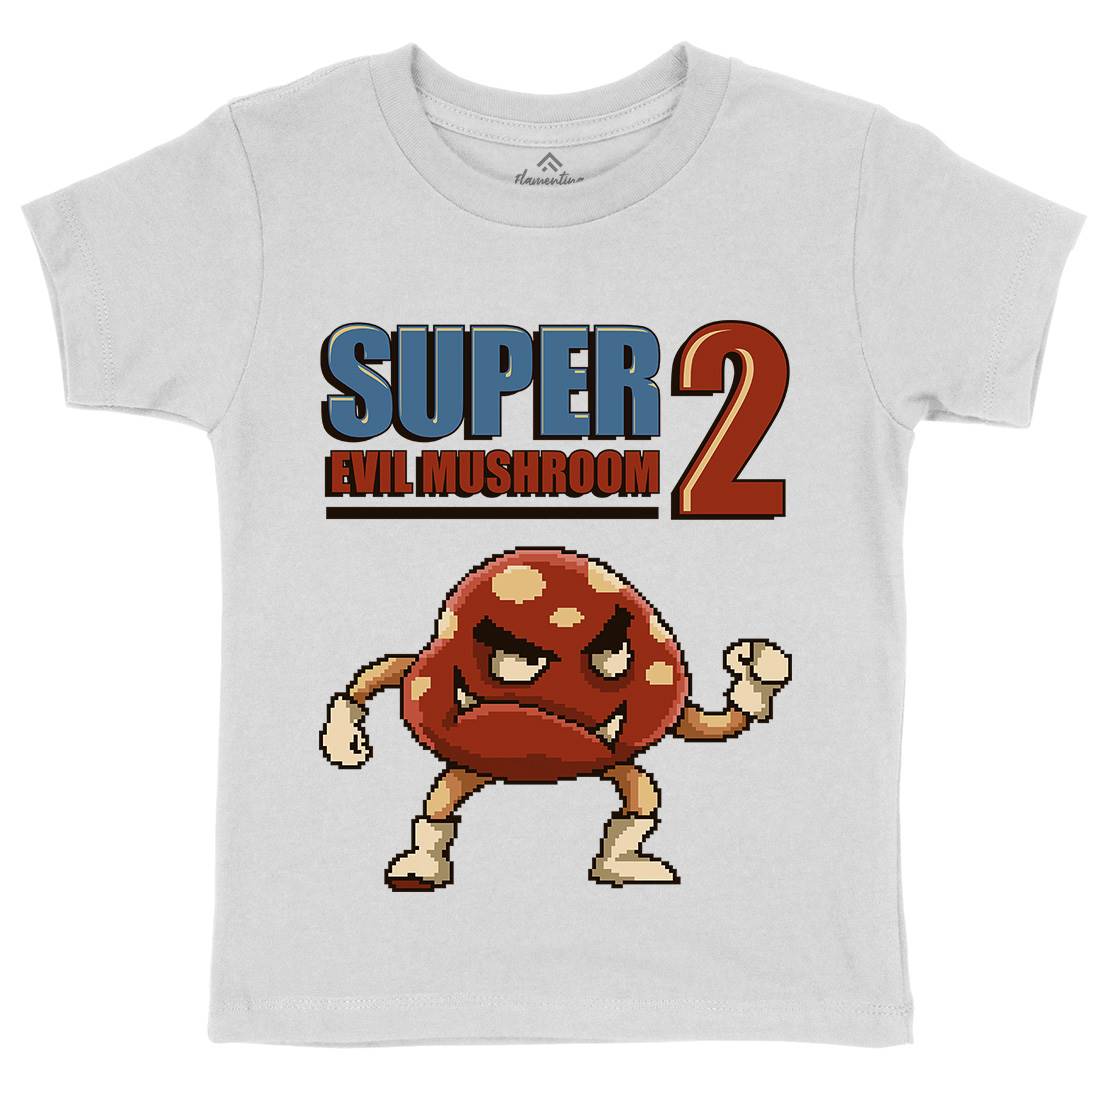 Super Evil Mushroom Kids Organic Crew Neck T-Shirt Geek B962